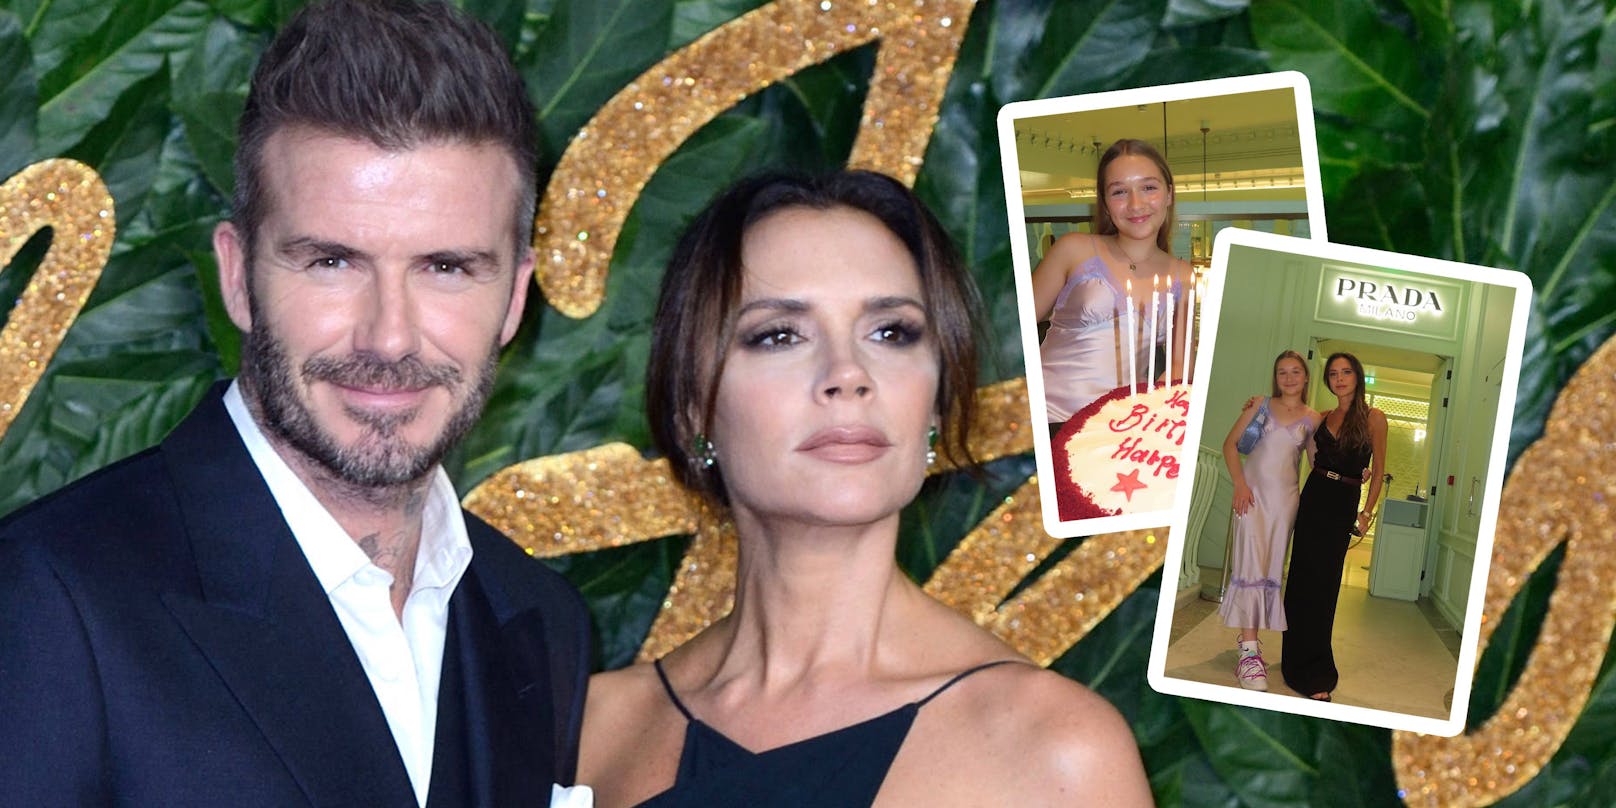 Prada-Party mit 12 – Beckhams feiern Tochter Harper